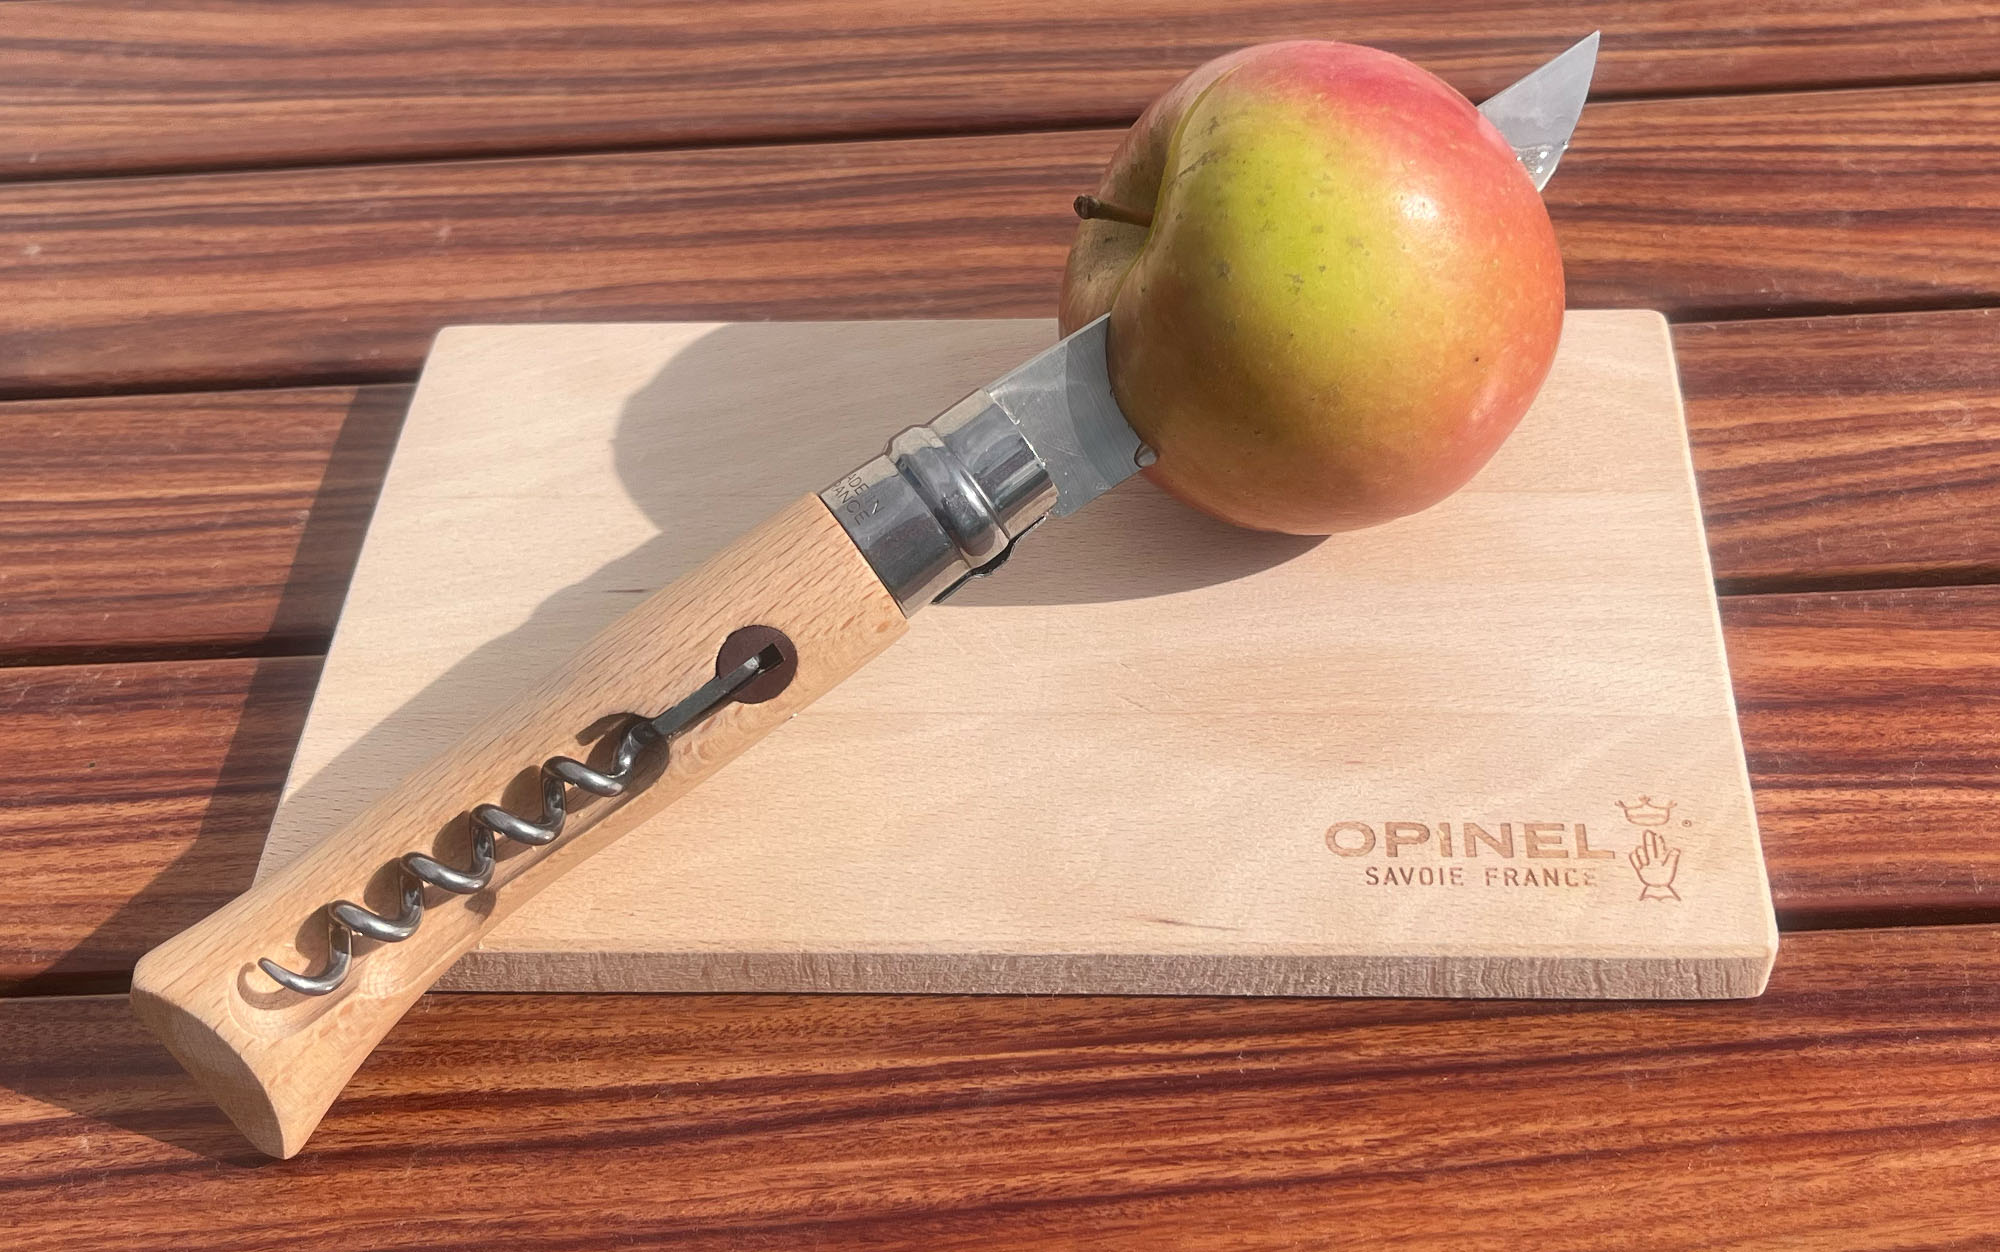 Opinel knife cuts apple.